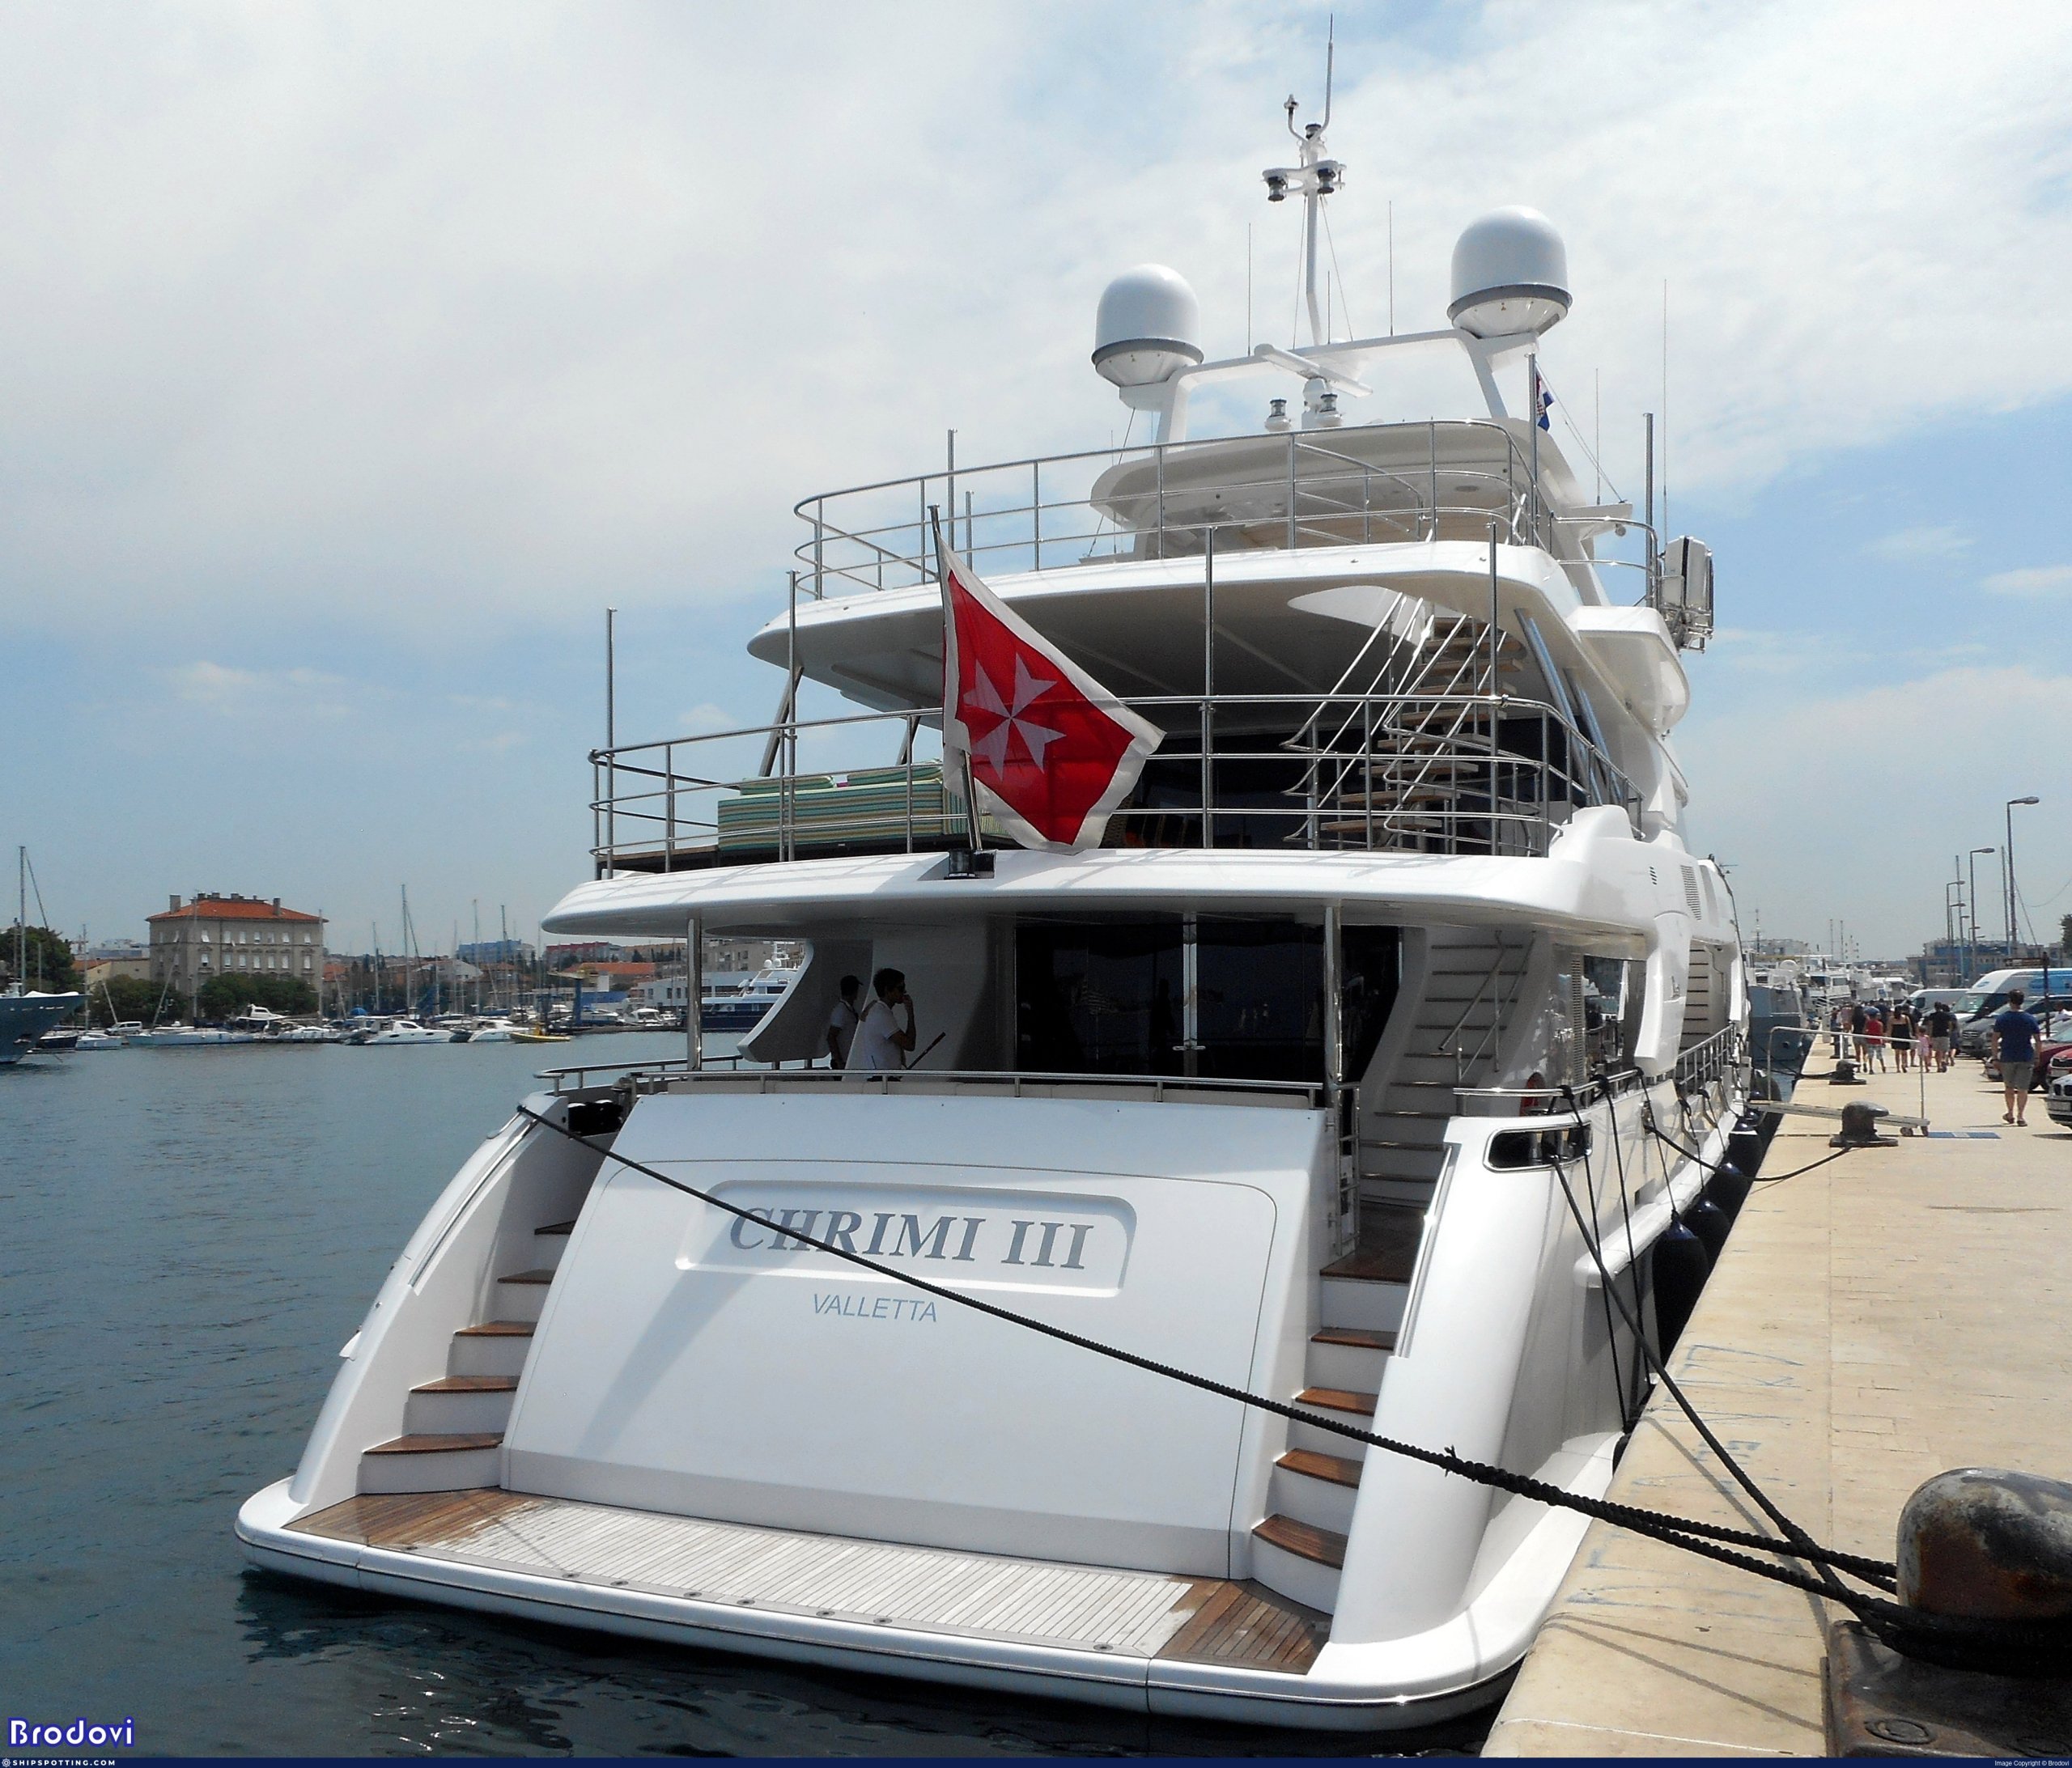 Chrimi III Yacht • Benetti • Owner Klaus Michael Kuehne